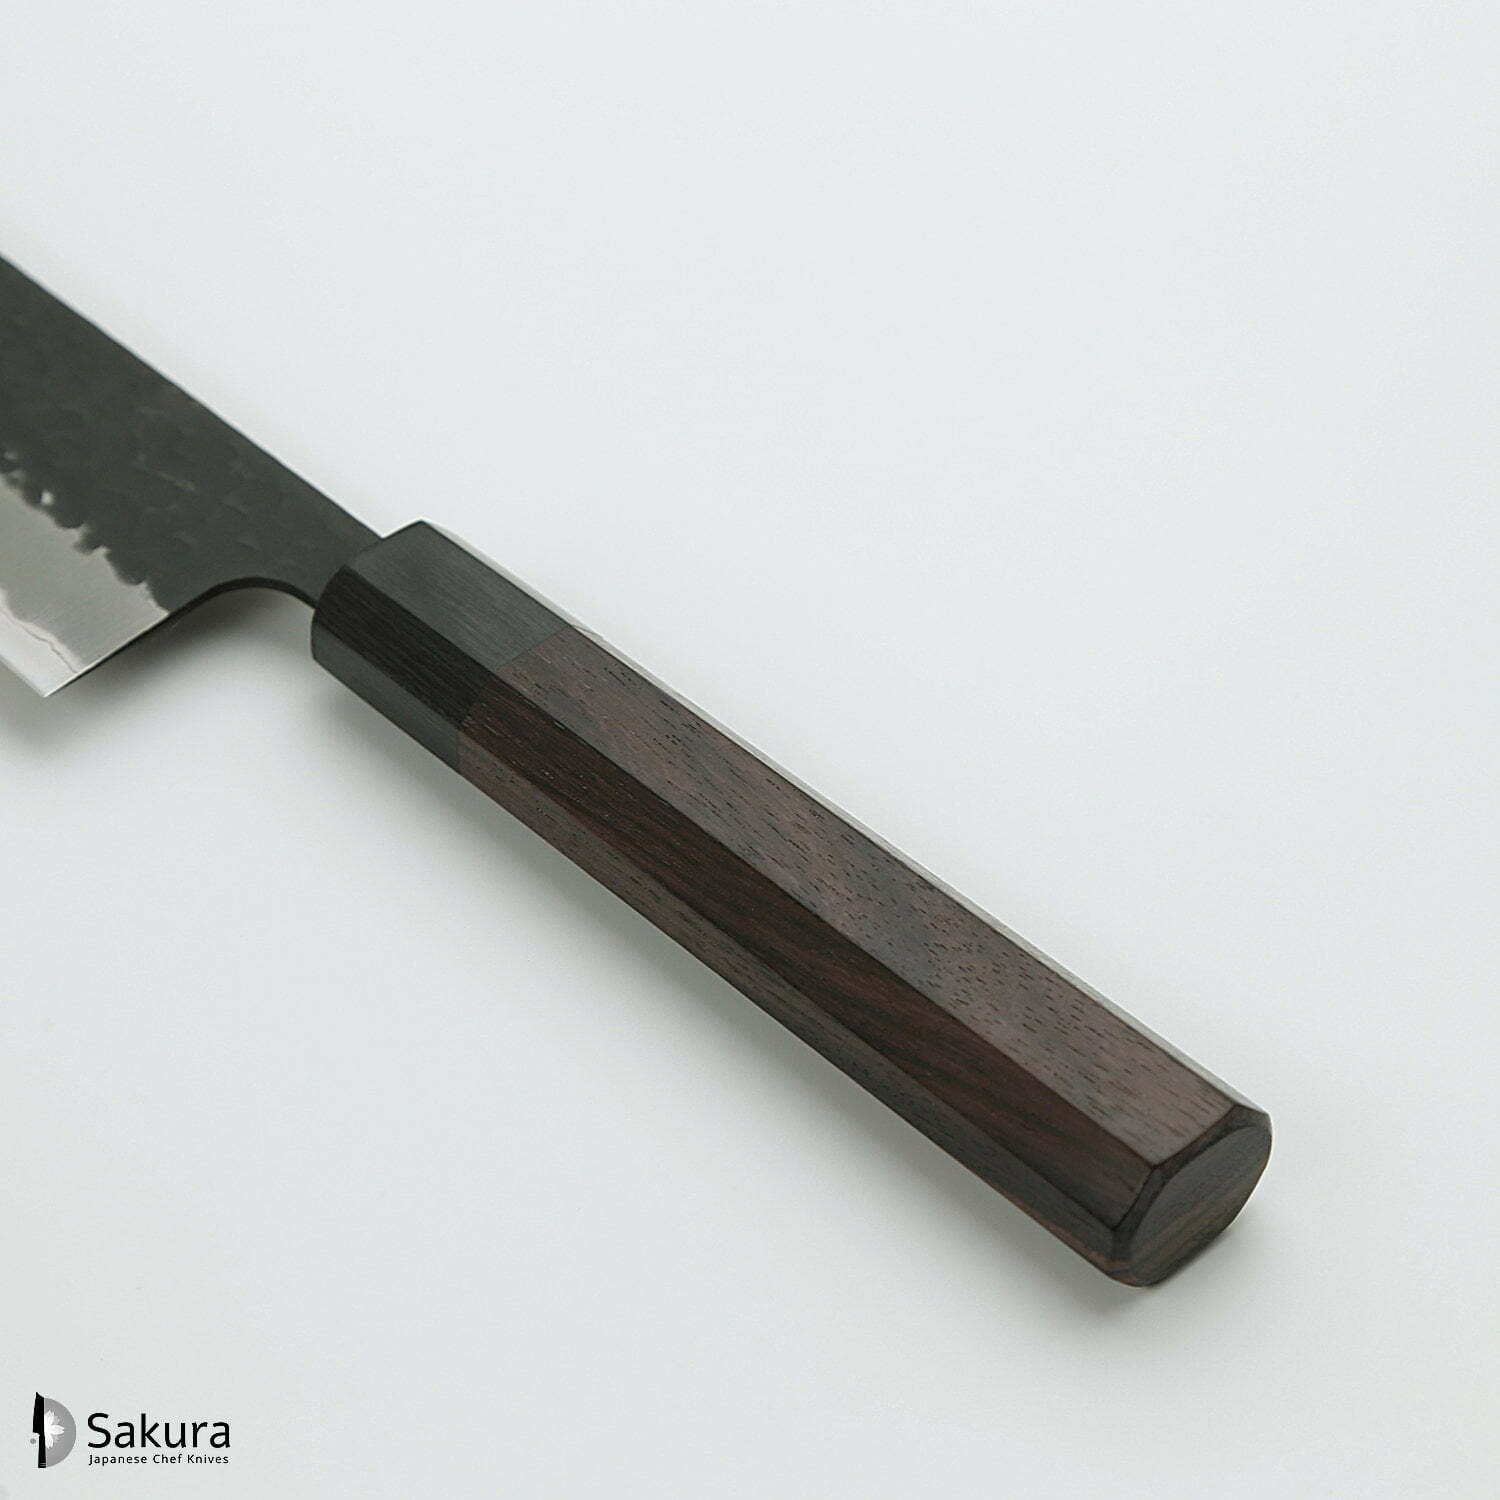 סכין שף רב-תכליתית גִּיוּטוֹ 240מ״מ מחוזקת 3 שכבות: פלדת פחמן יפנית מתקדמת מסוג Aogami Super עטופה פלדת אל-חלד גימור קורואיצ׳י שחור עם ריקוע פטיש ג׳יקו סאקאיי יפן